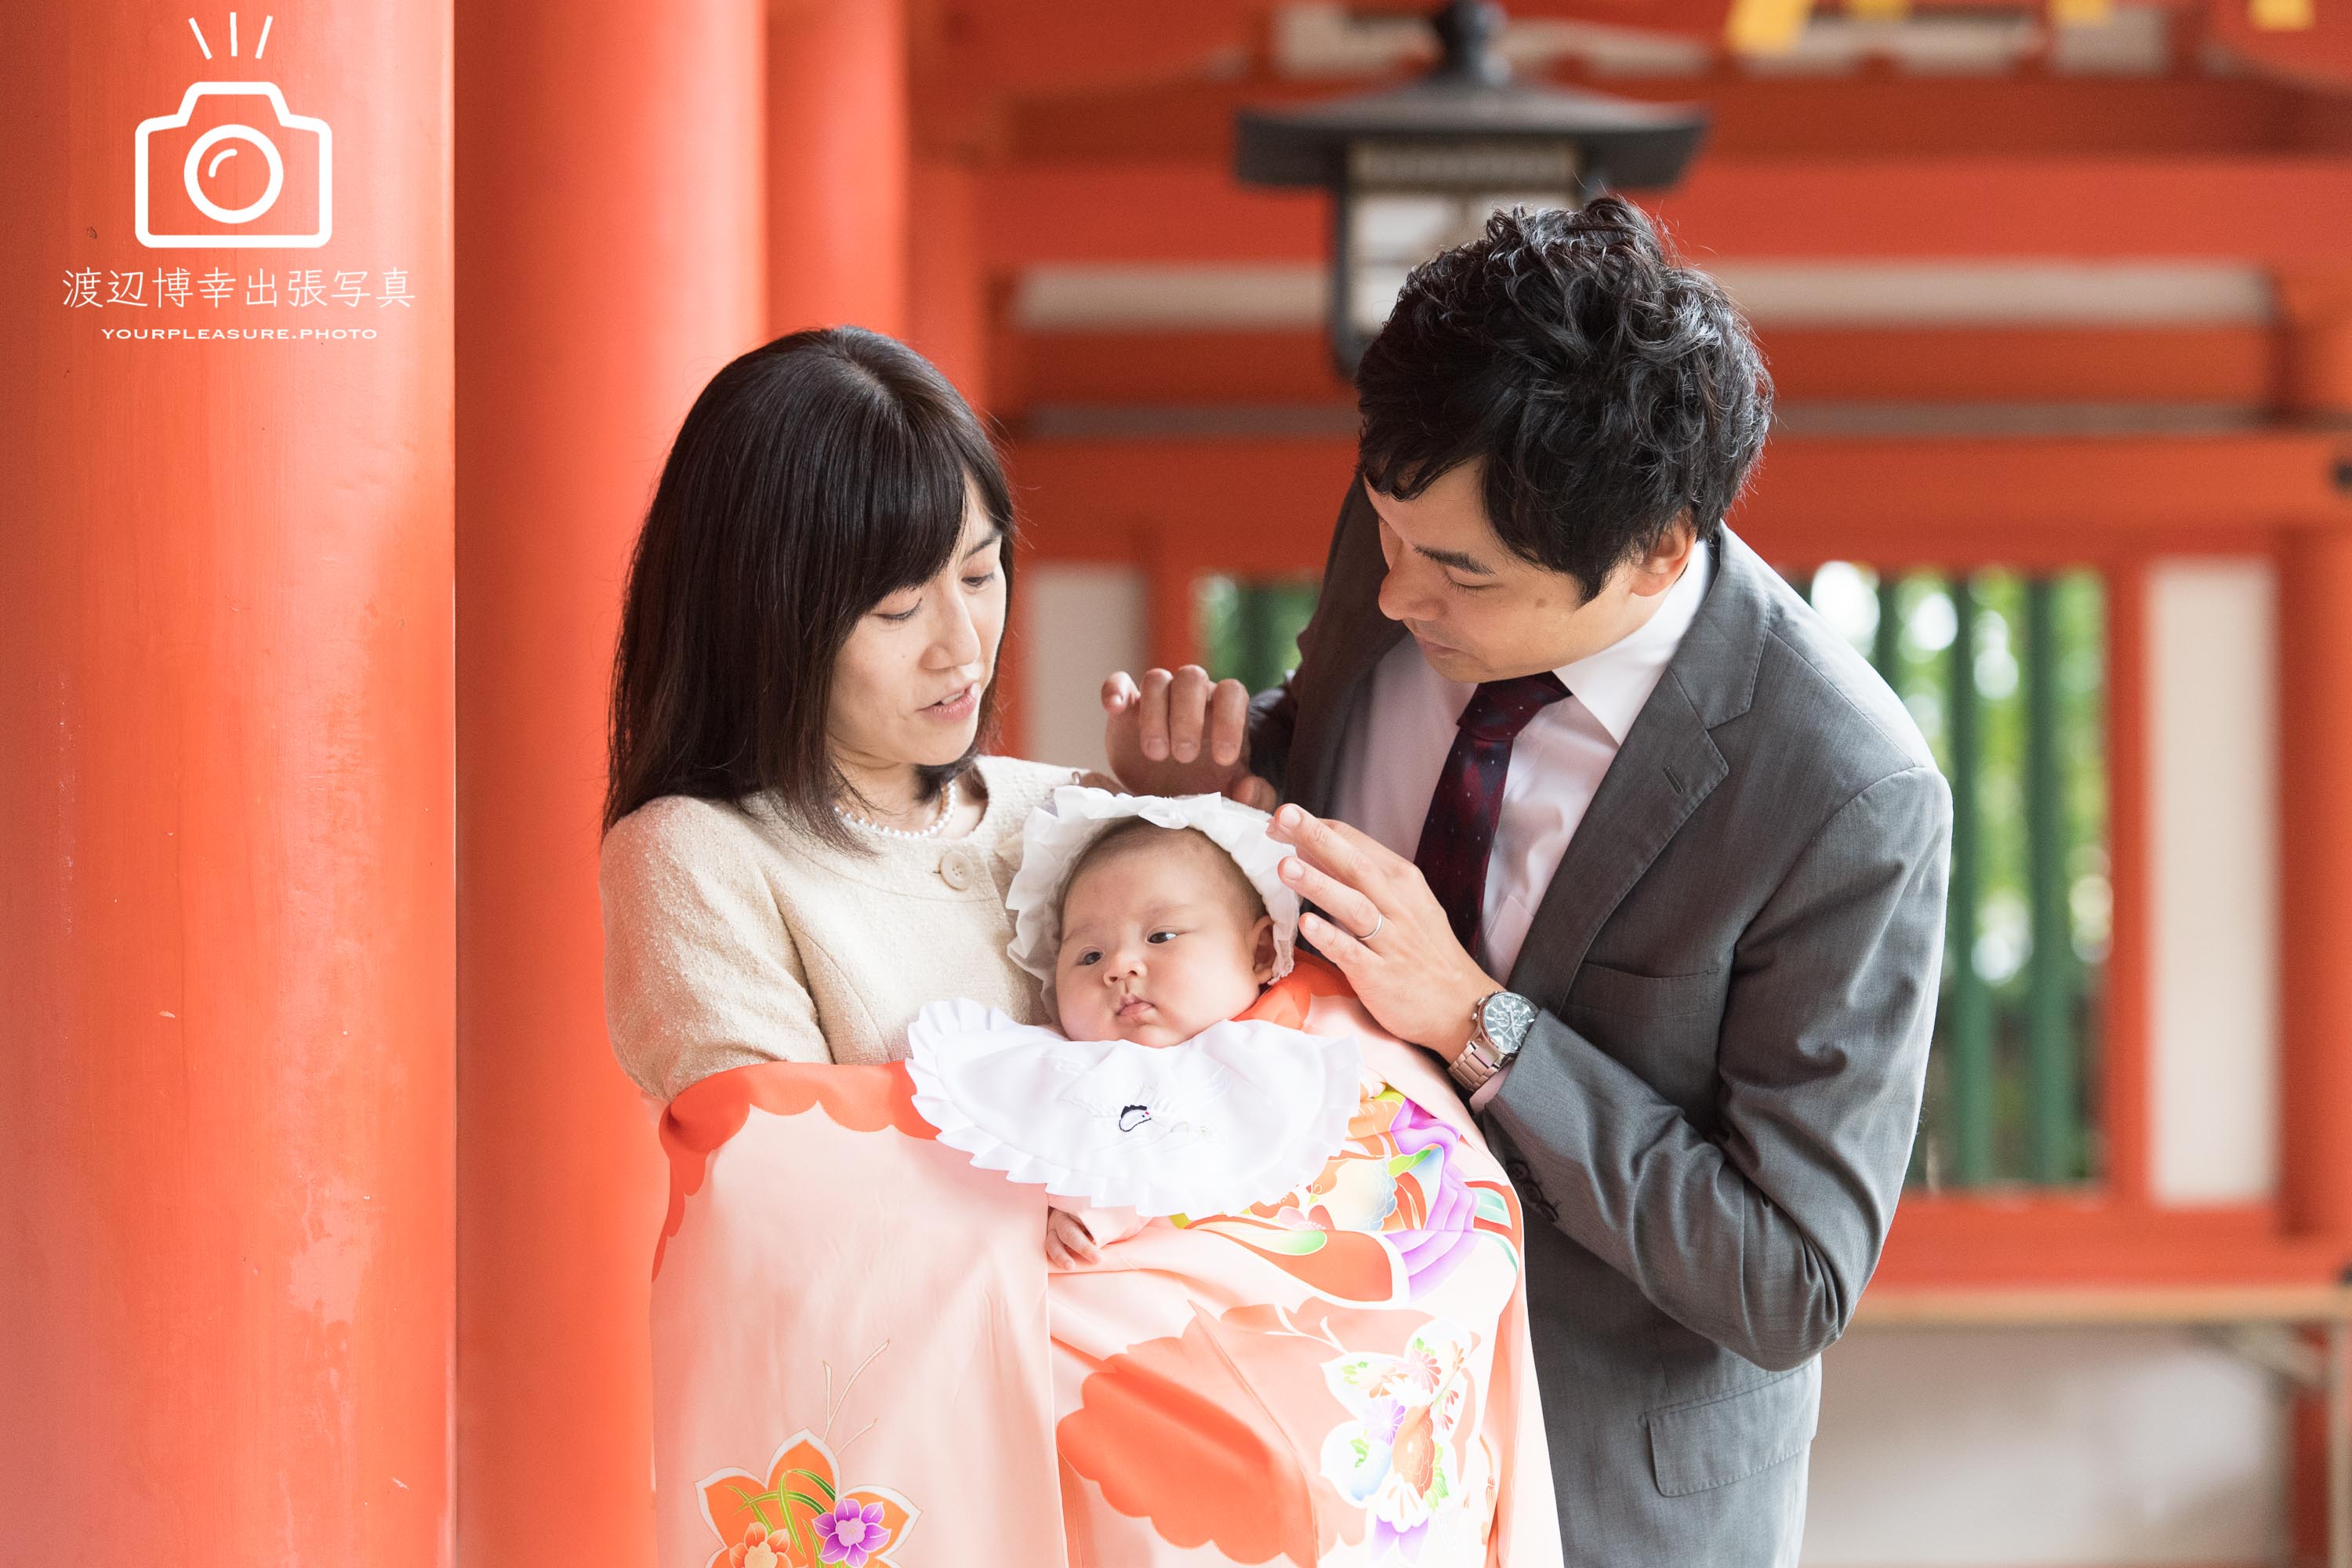 大宮氷川神社の回廊の赤い柱のそばに立つ赤ちゃんを抱っこした掛着姿のママとパパ